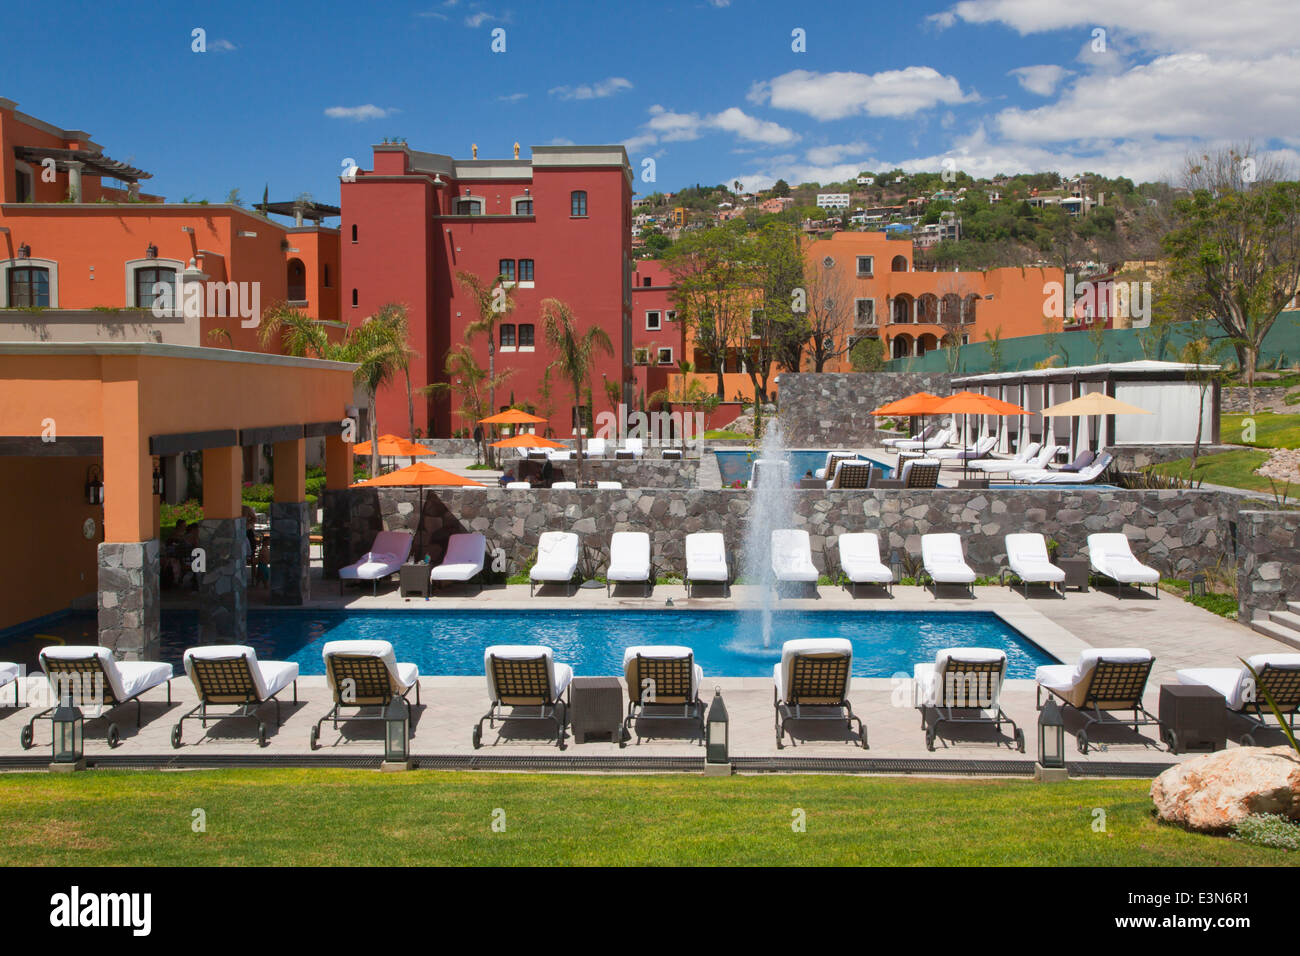 La piscine sur le terrain de l'hôtel ROSEWOOD récemment construit - San Miguel de Allende, Guanajuato, Mexique Banque D'Images